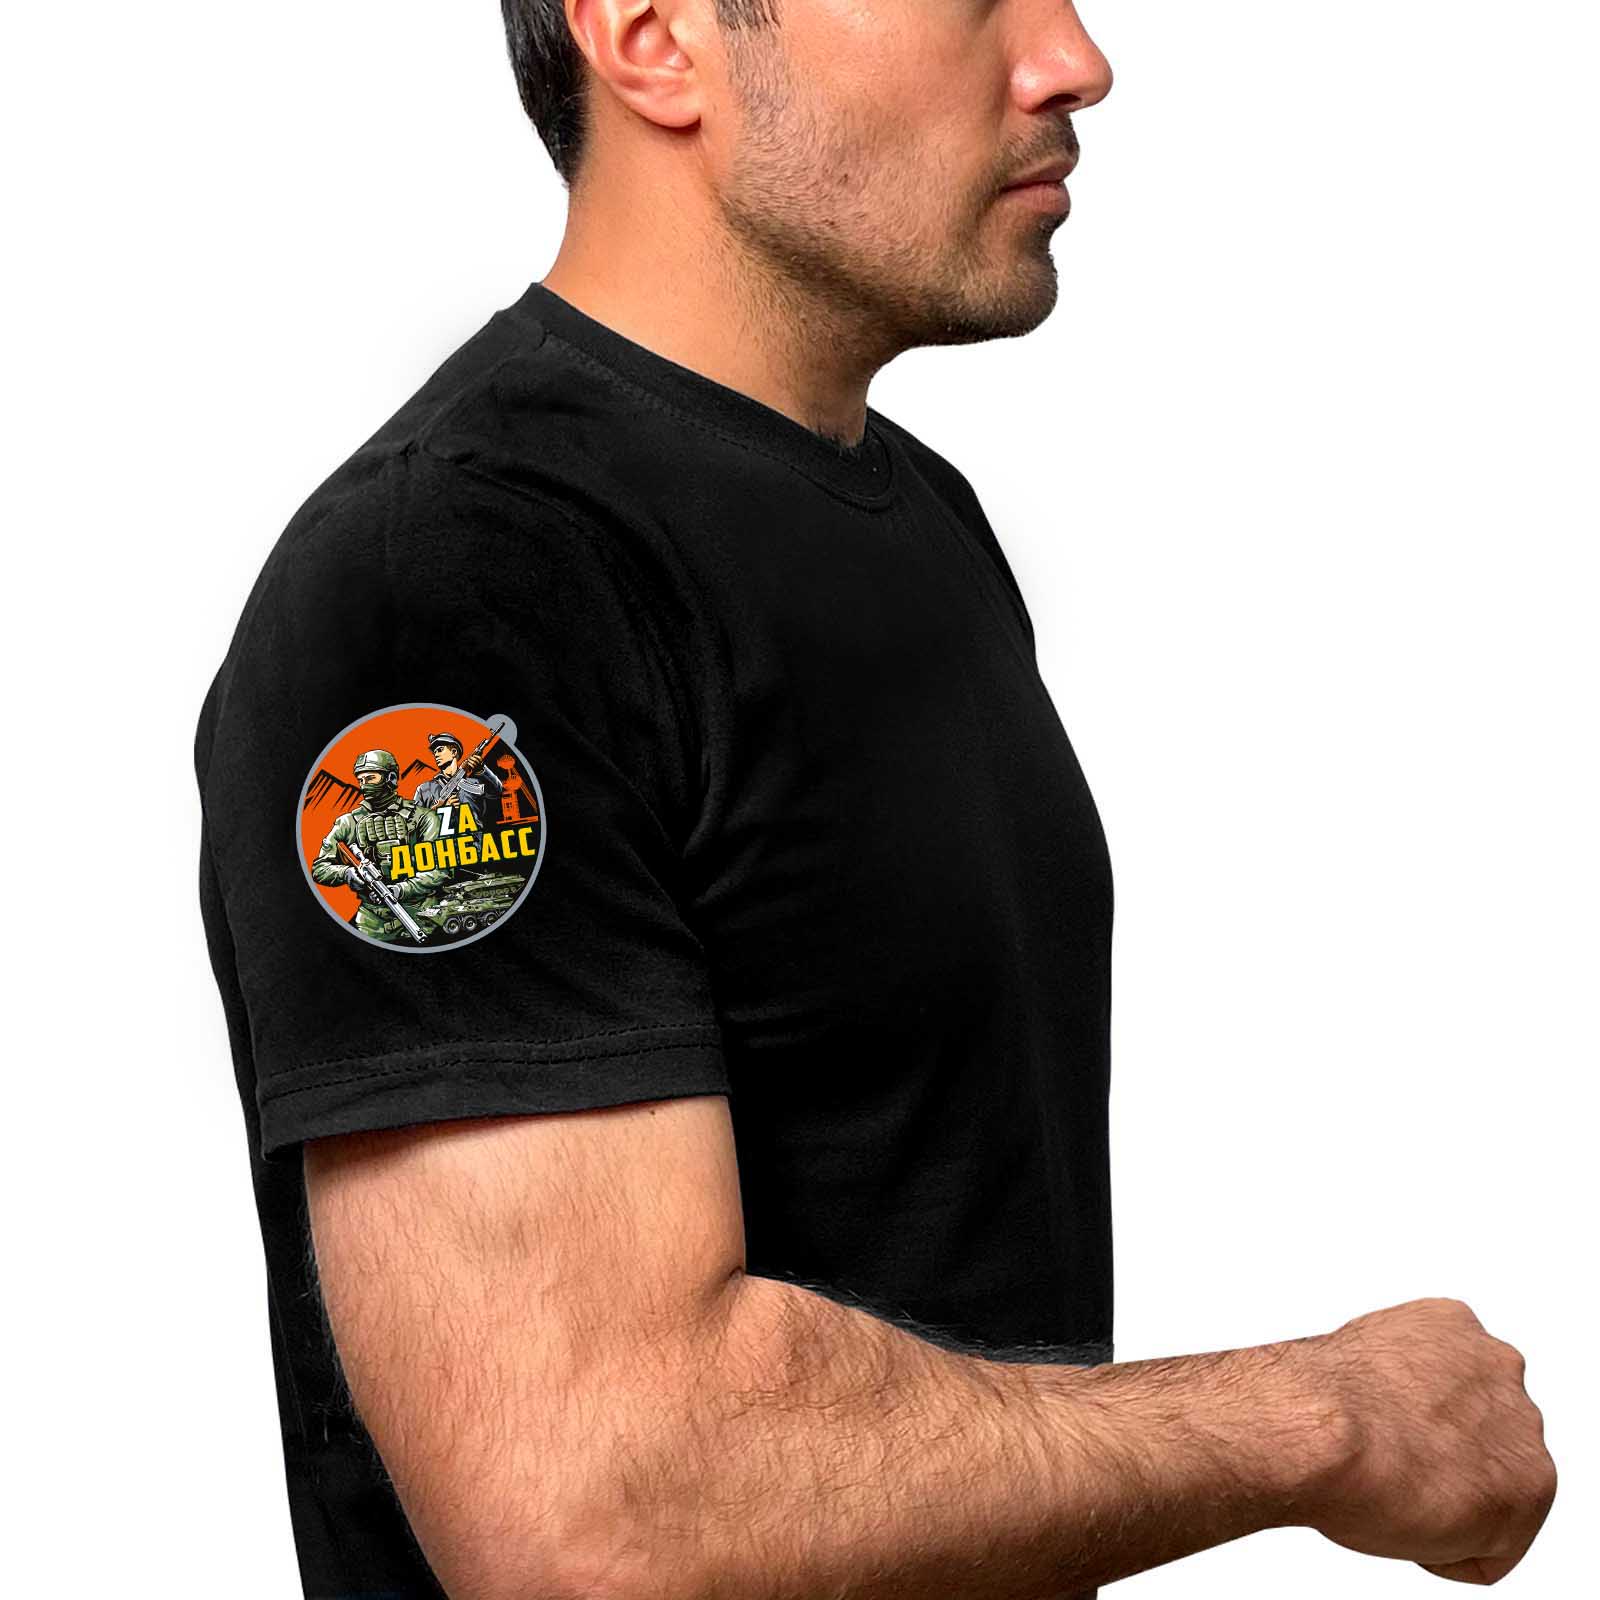 Чёрная футболка с термопринтом "Zа Донбасс" на рукаве